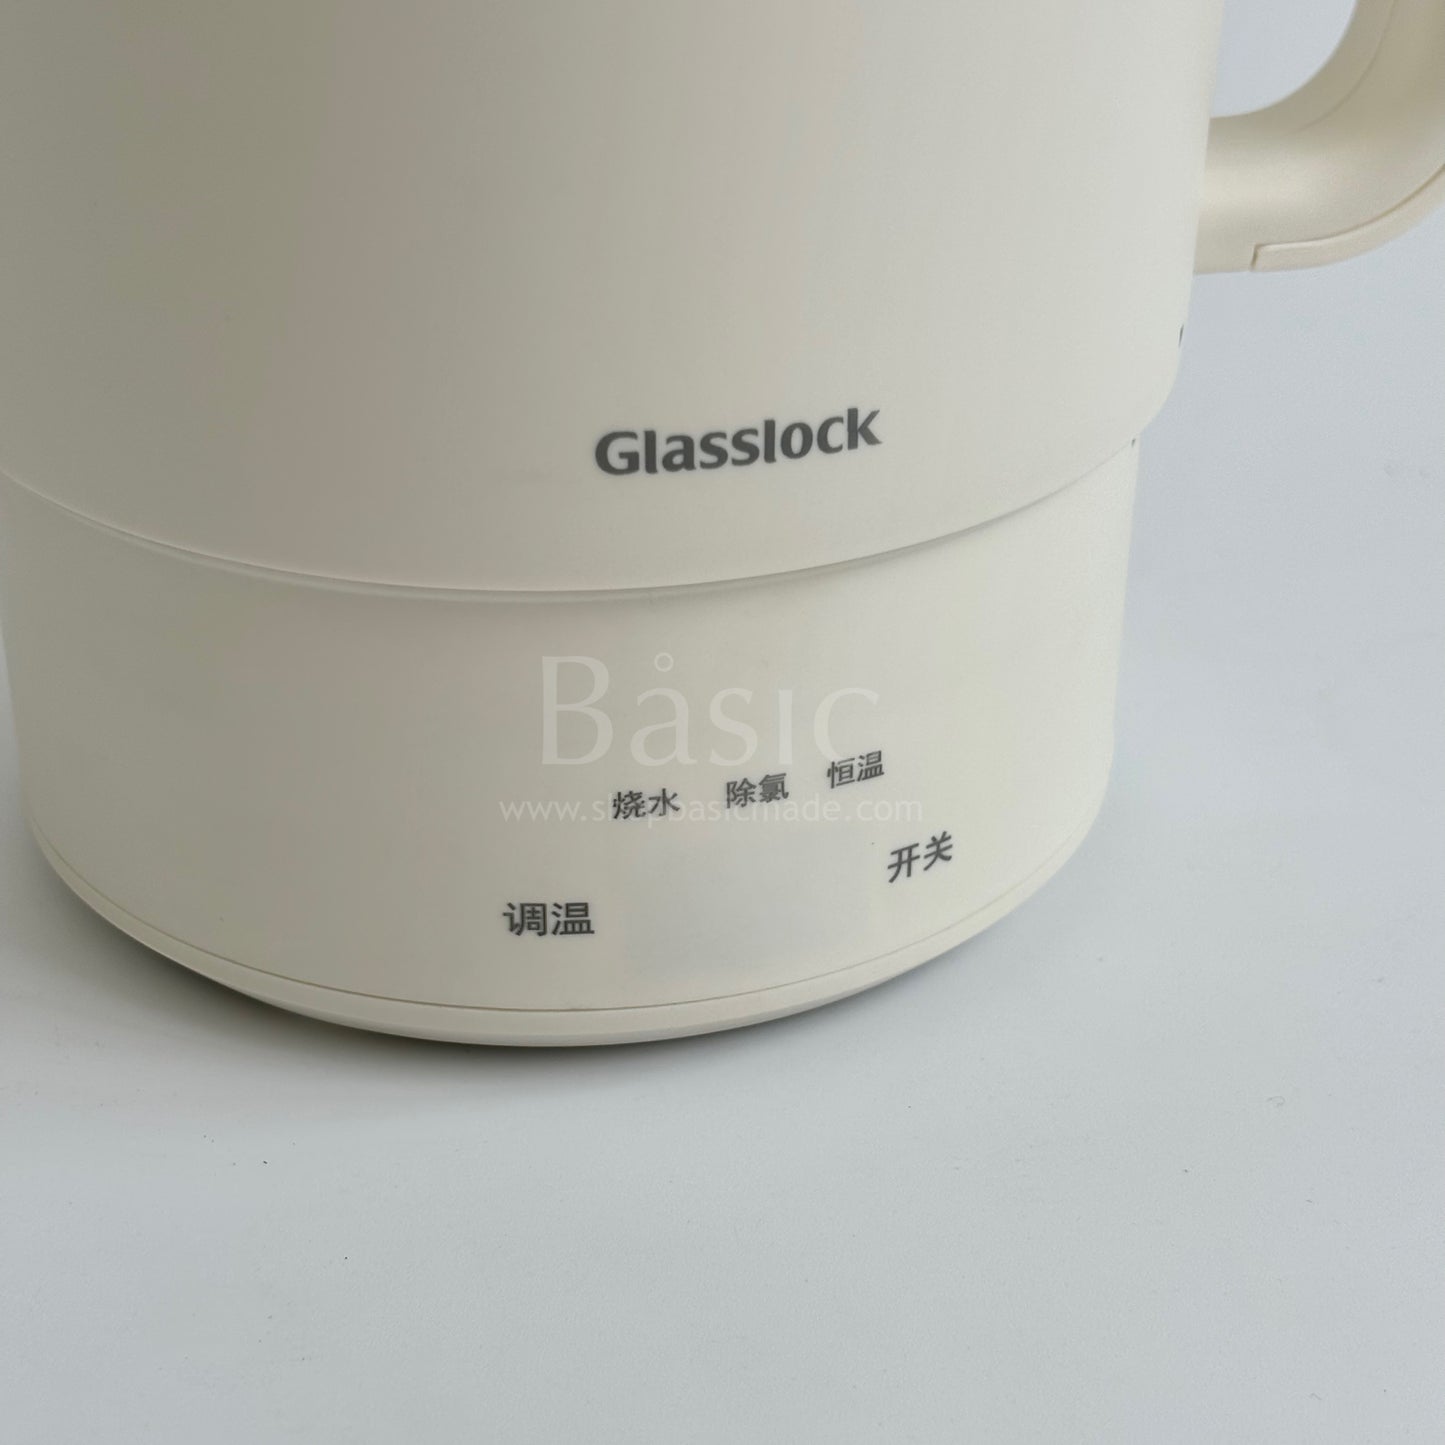 Glasslock Portable Tea Pot